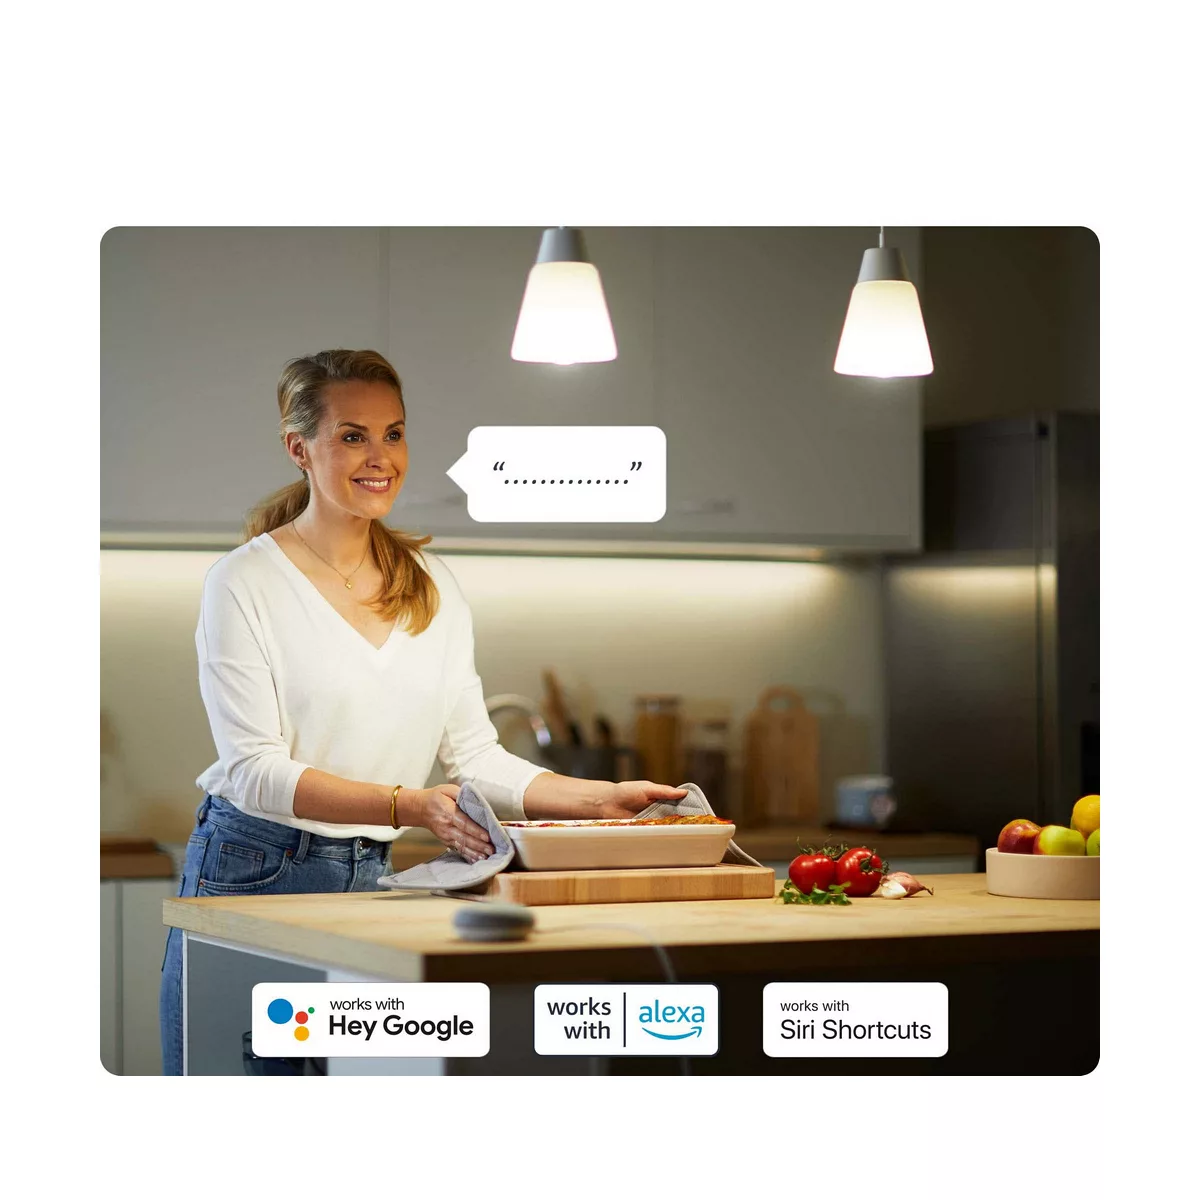 WiZ SuperSlim LED-Deckenleuchte CCT Ø29cm weiß günstig online kaufen